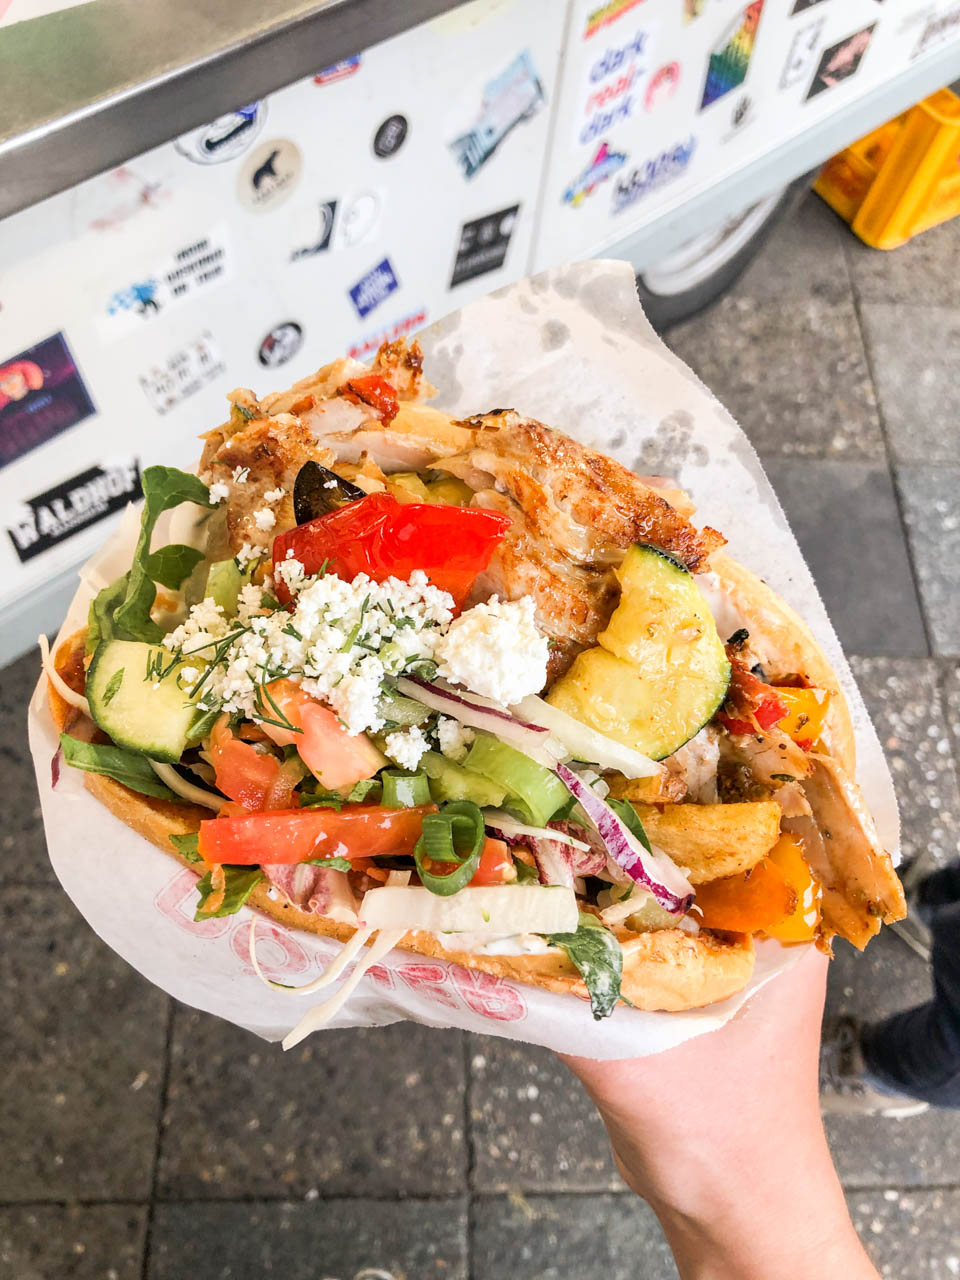 A woman's hand holding a kebab from Mustafa's Gemüse Kebap in Berlin, Germany